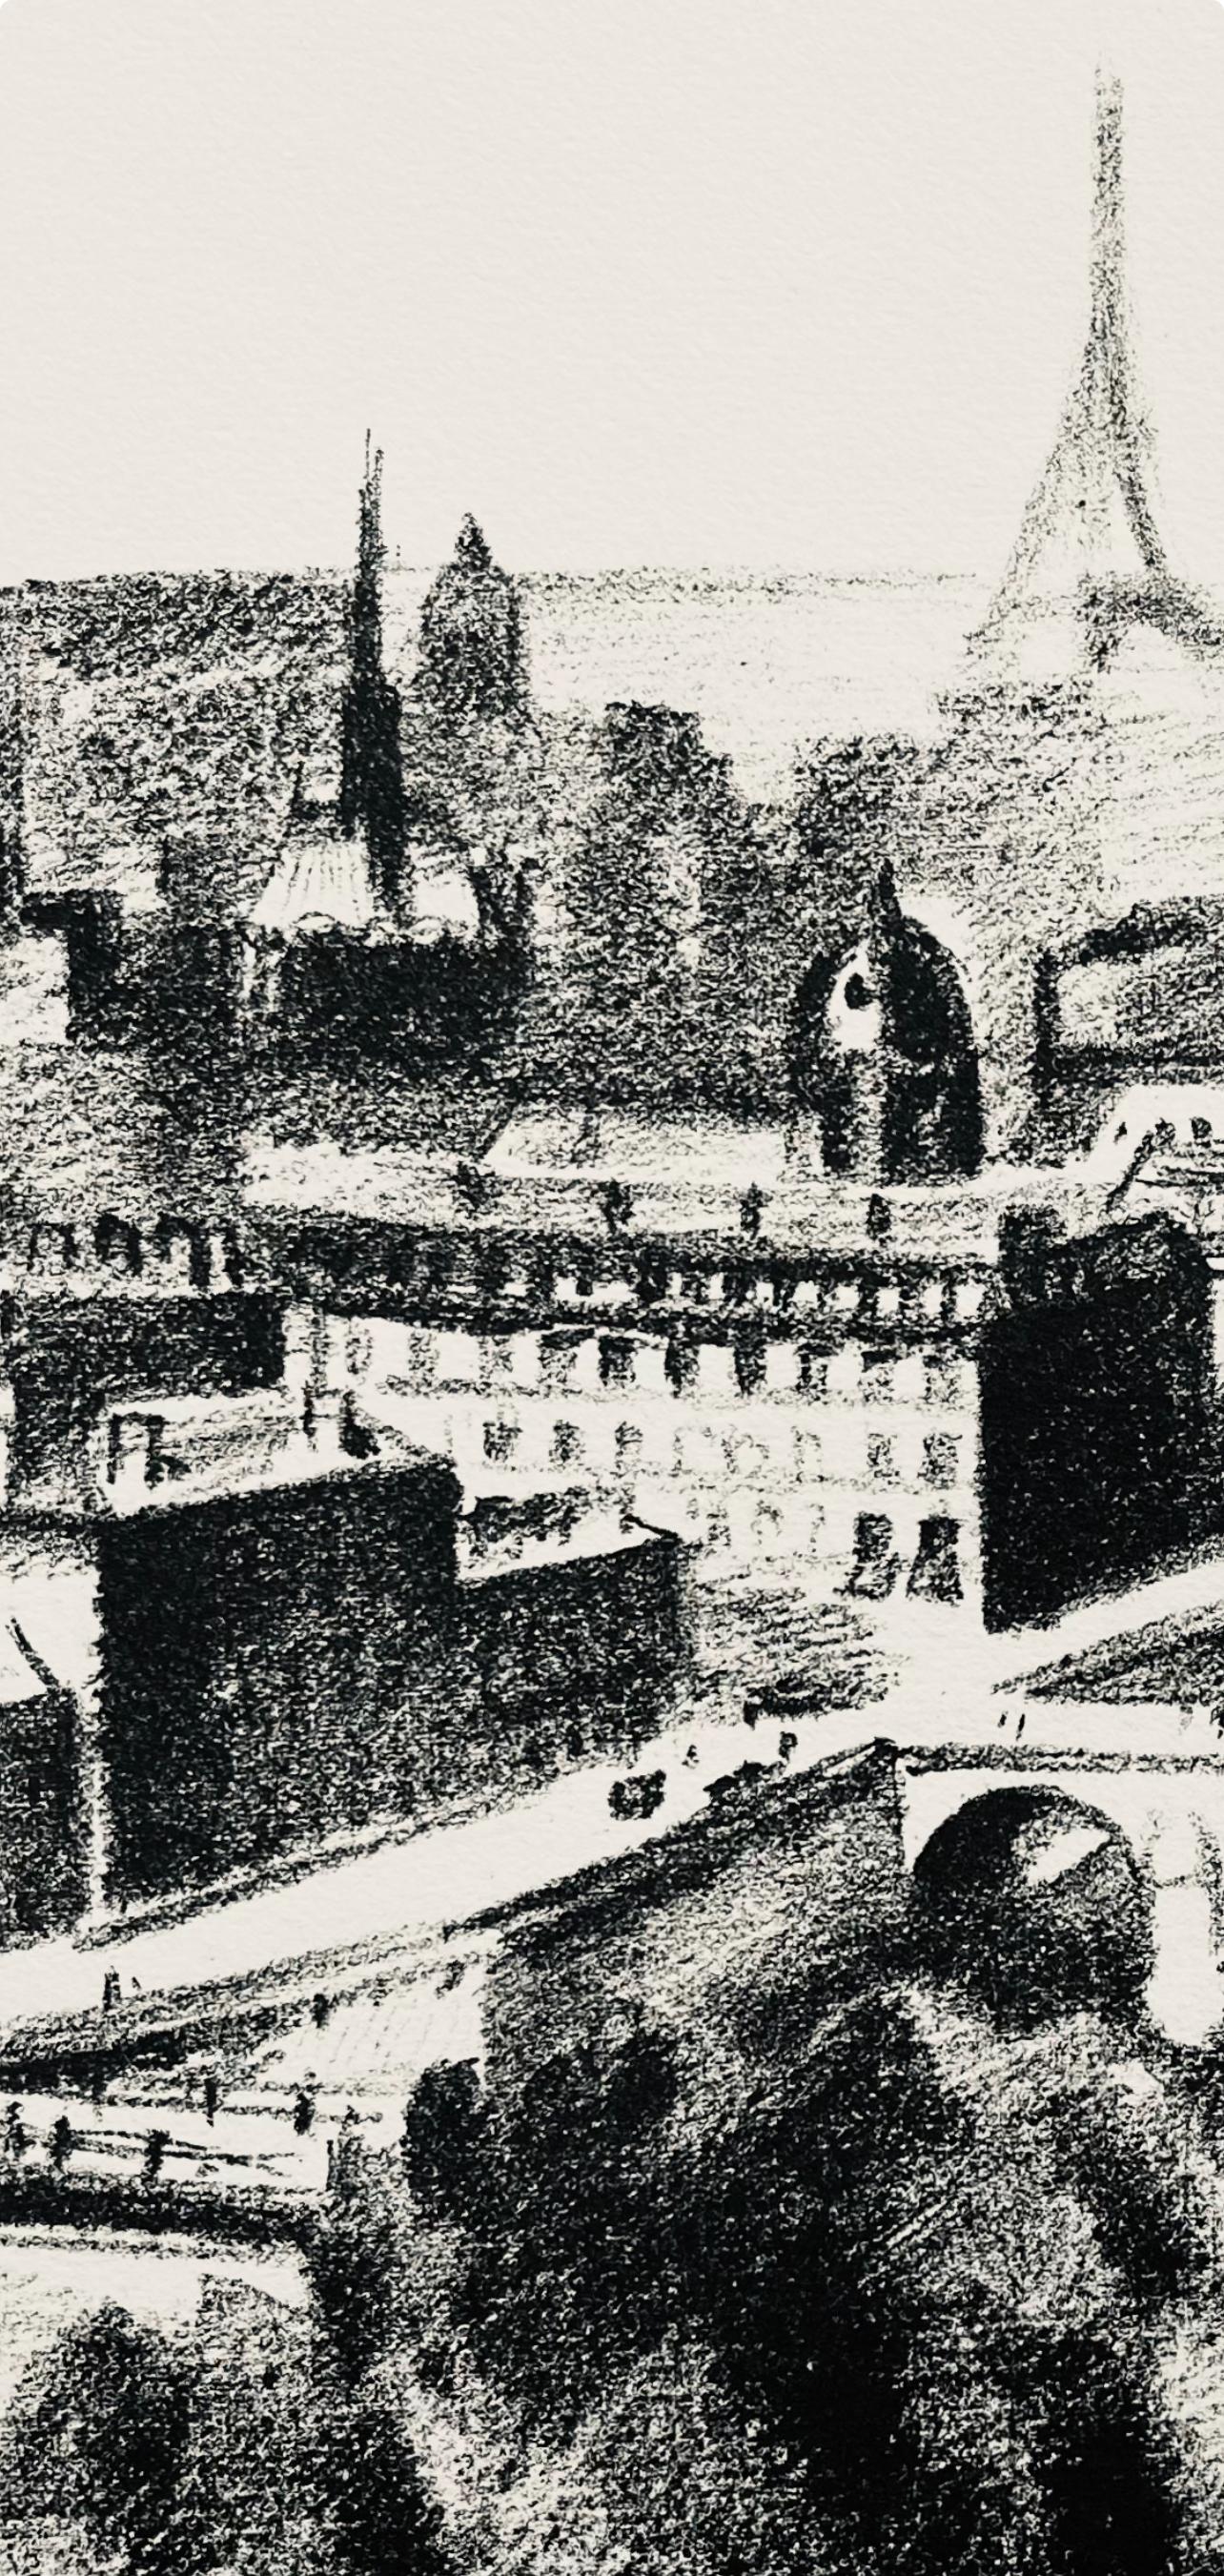 Delaunay, La Seine et La Tour (Habasque 720-728), Allo! Paris! (after) - Modern Print by Robert Delaunay